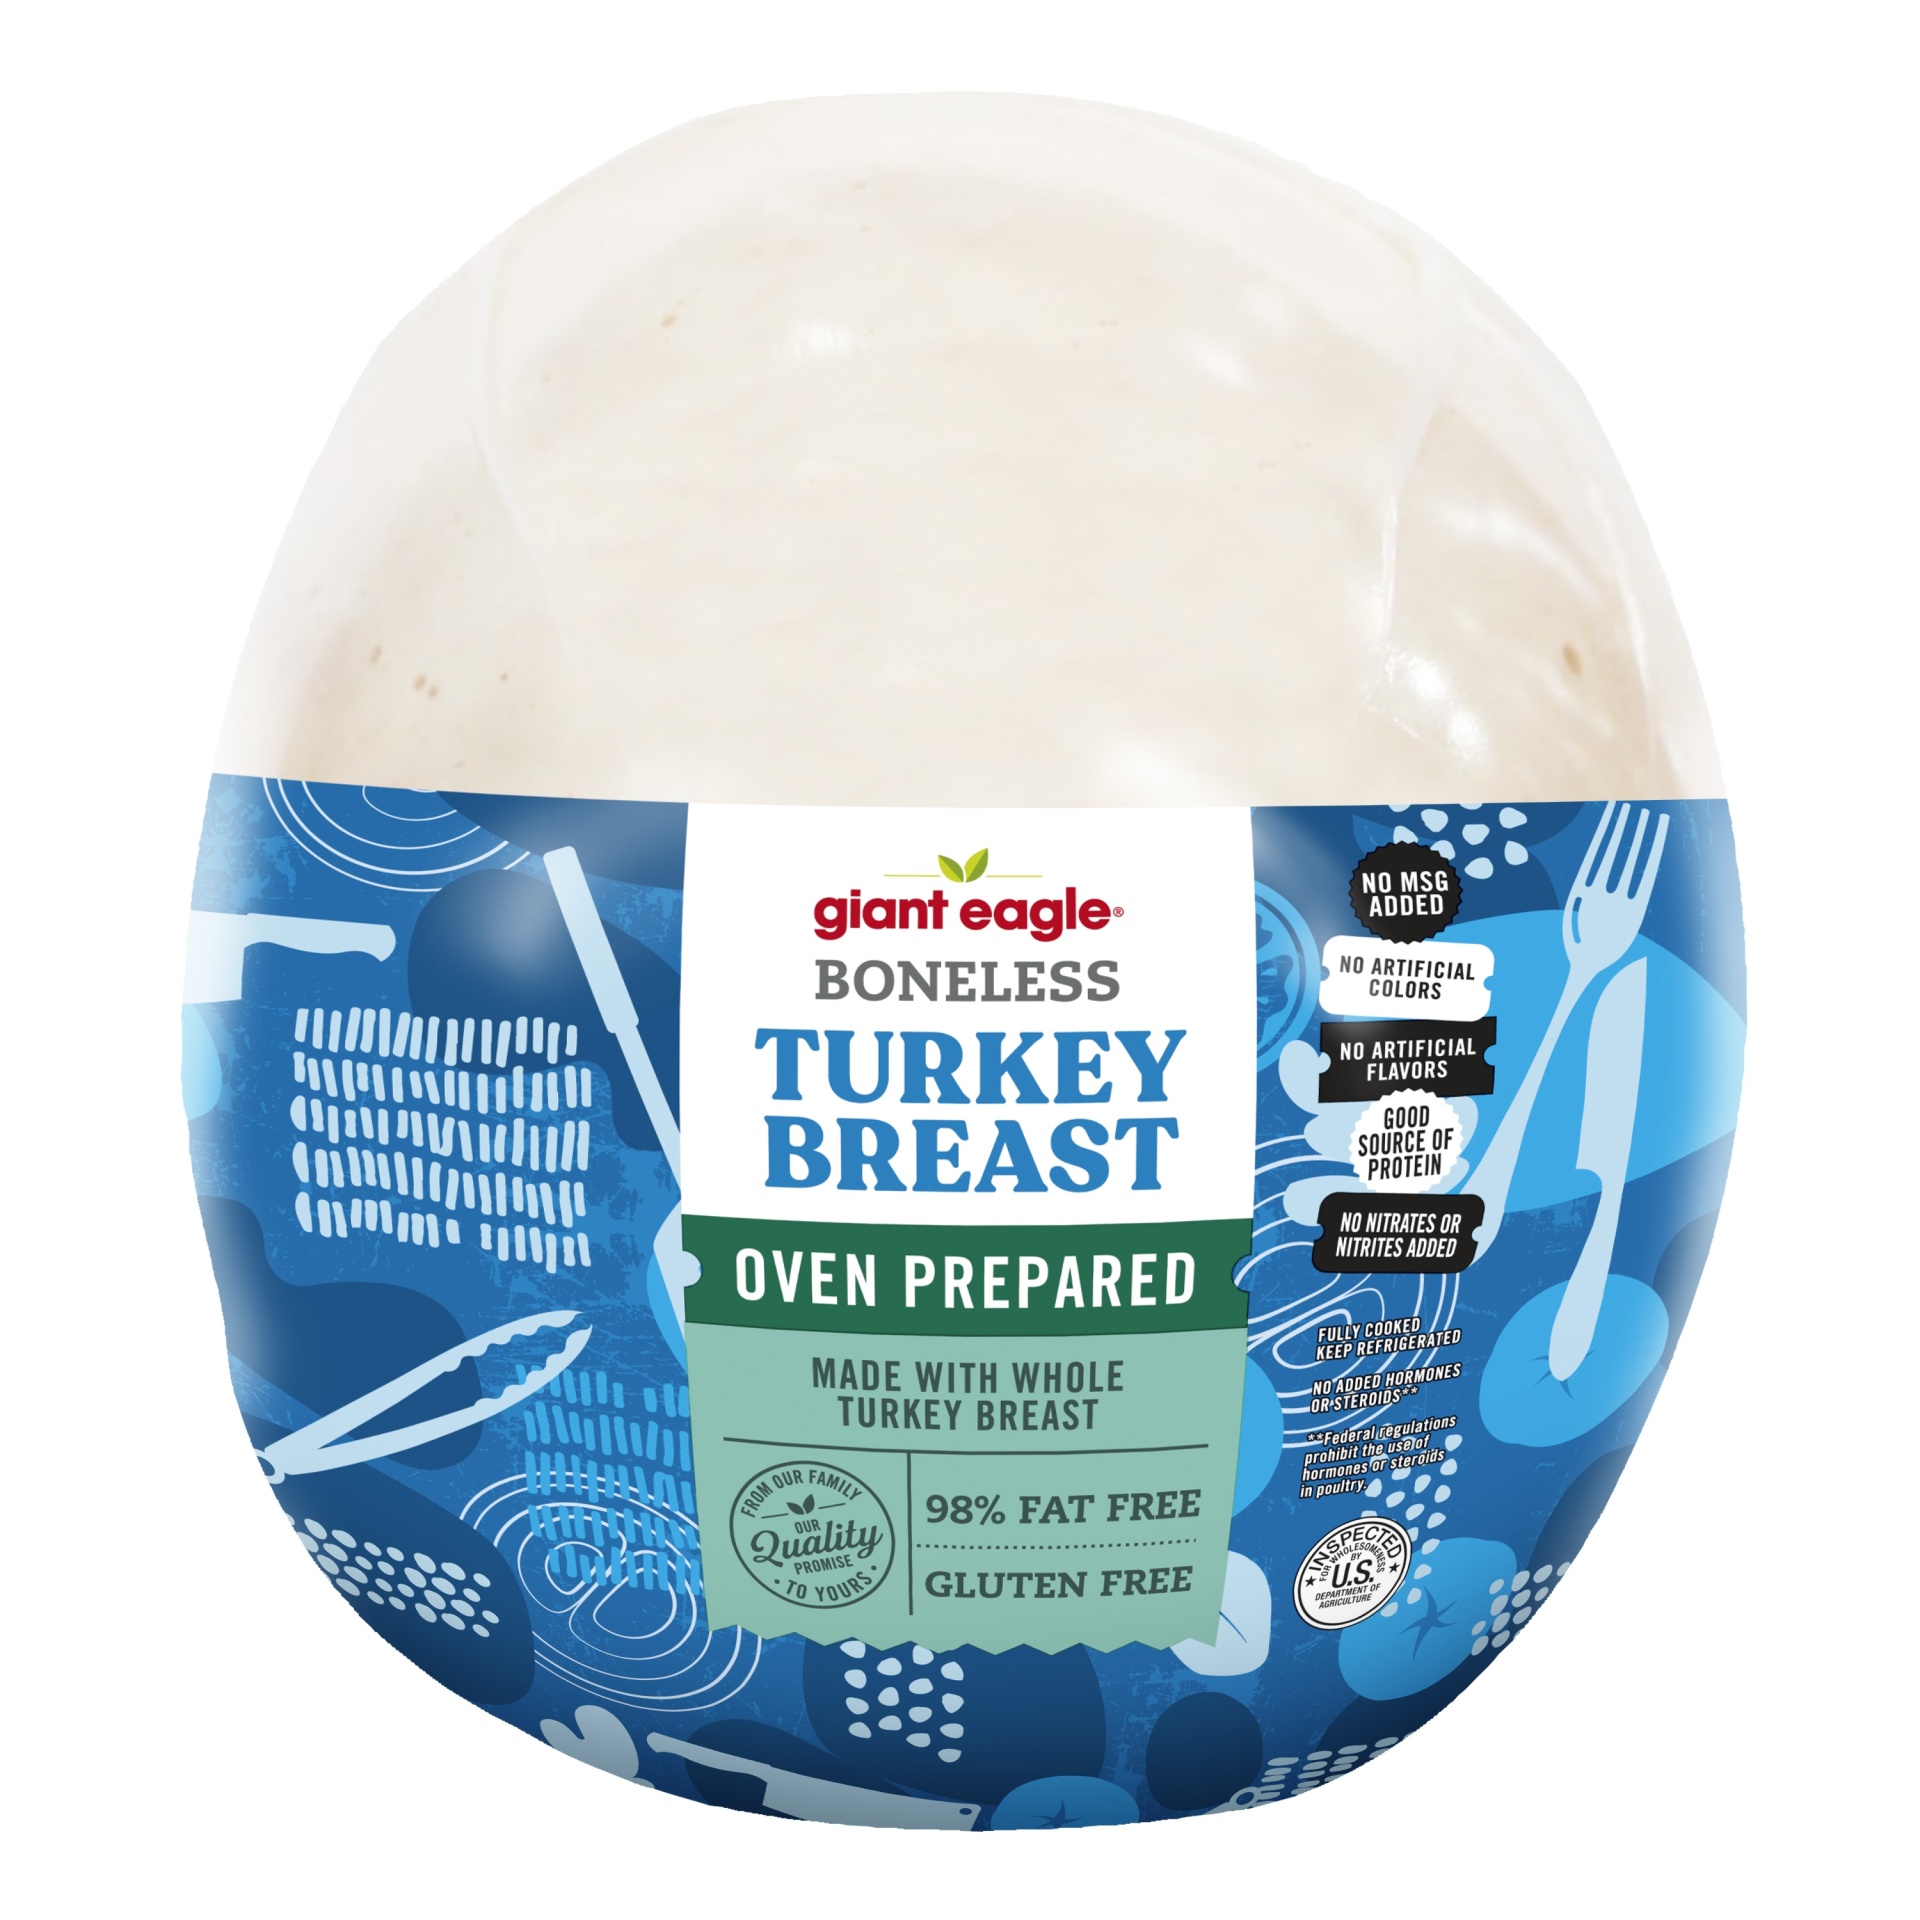 Giant Eagle Turkey Breast, Boneless, Oven Prepared per lb Shipt